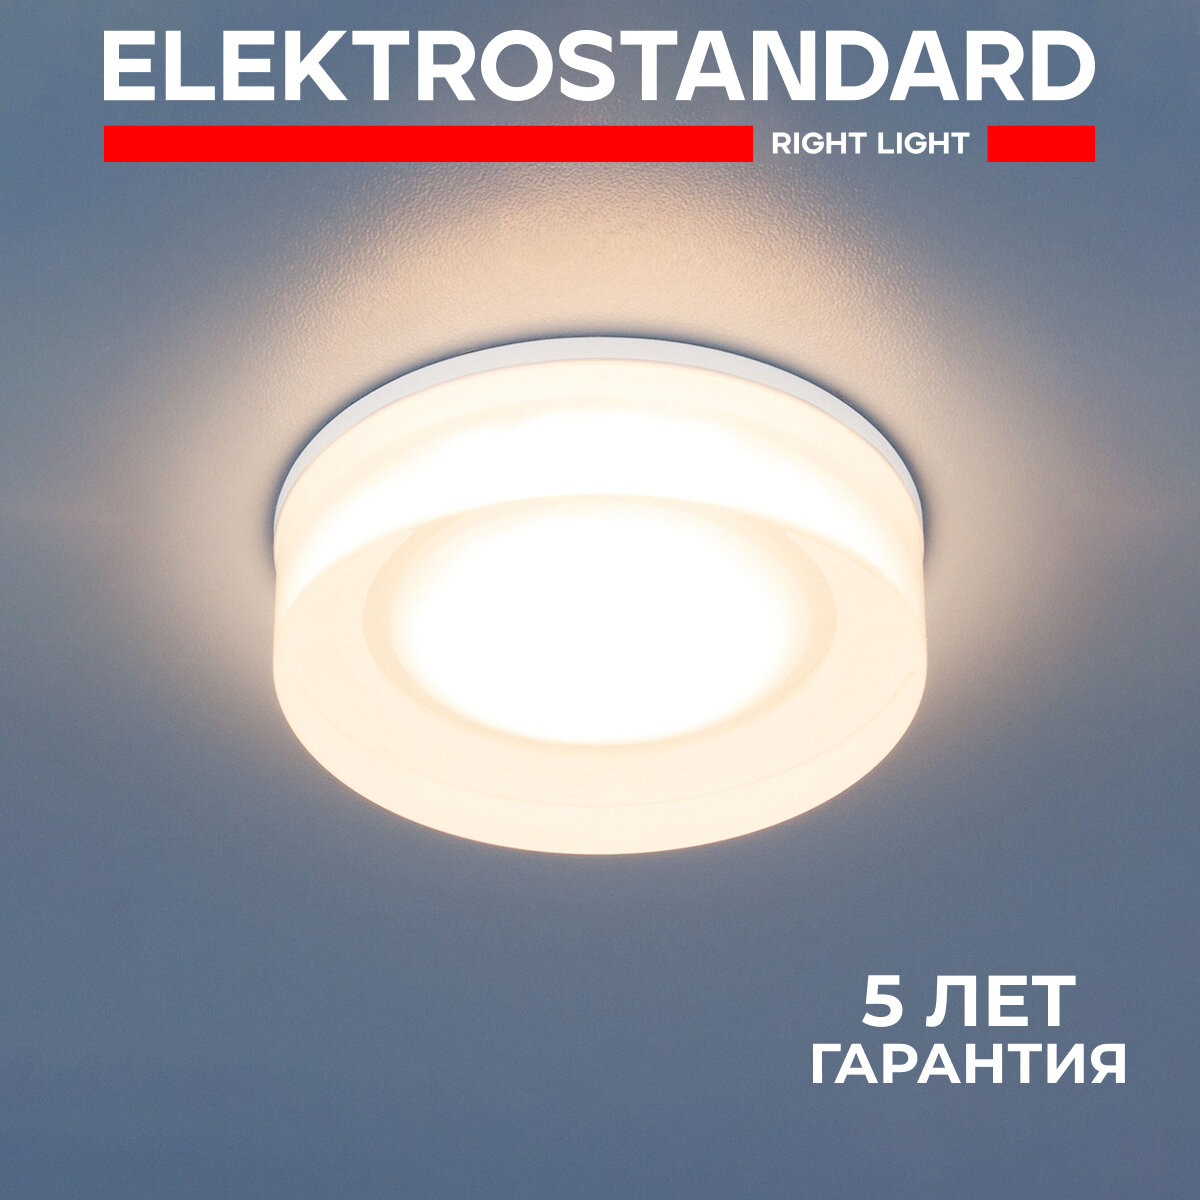 Встраиваемый светодиодный точечный светильник Elektrostandard DSKR81, 5 Вт, 4200 K, цвет прозрачный